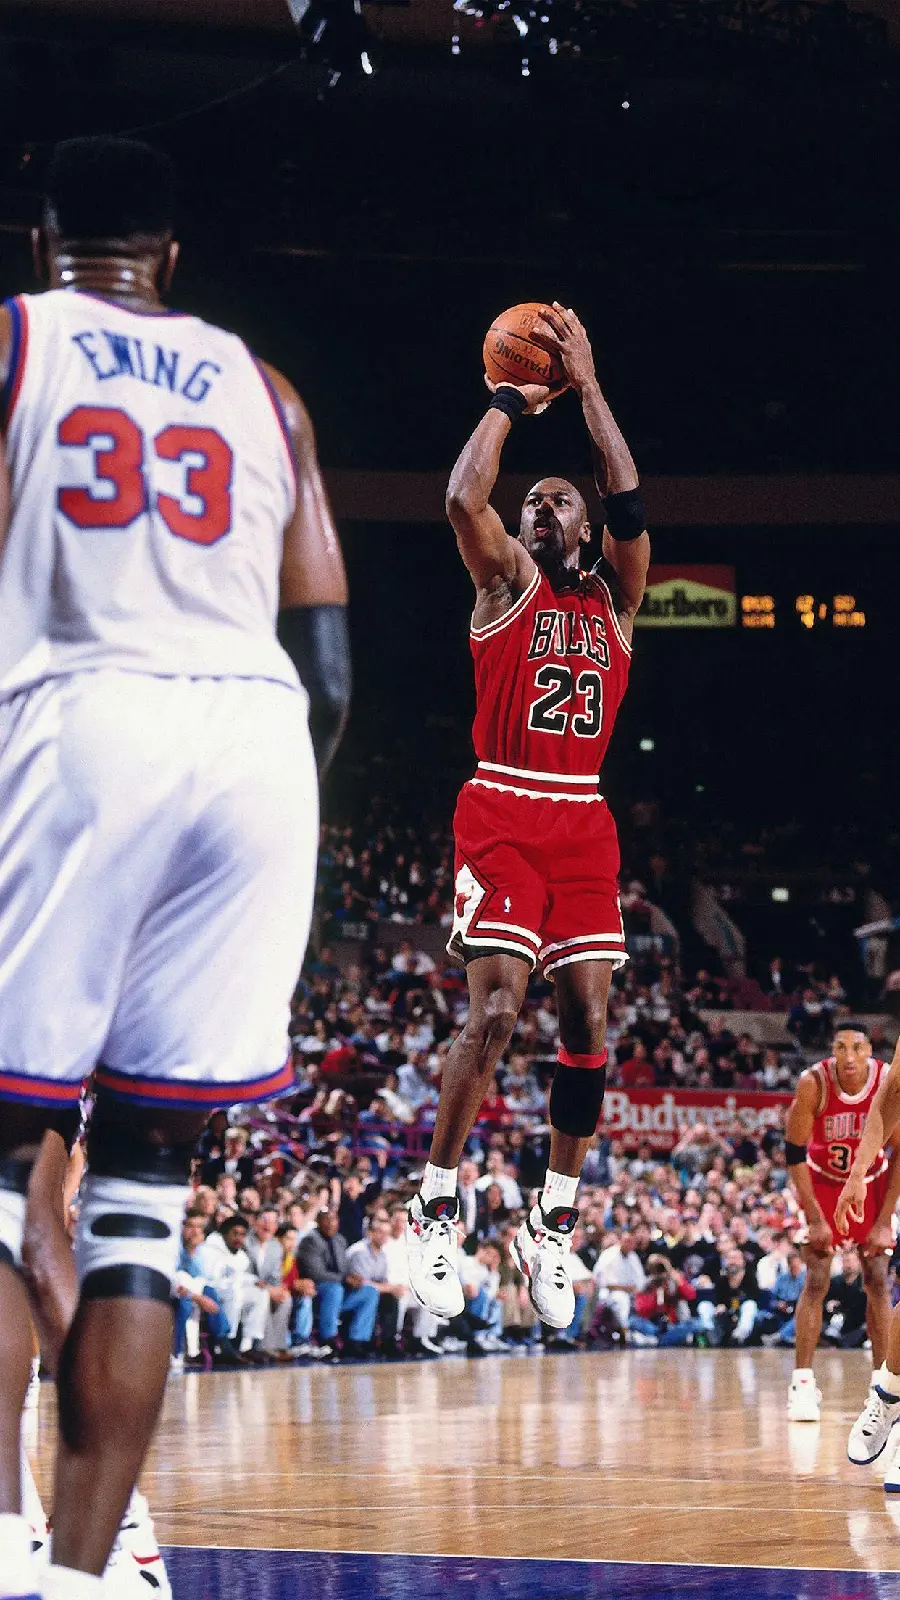 عکس مایکل جردن بسکتبالیست آمریکایی معروف با کفش های ورزشی نایک جردن 